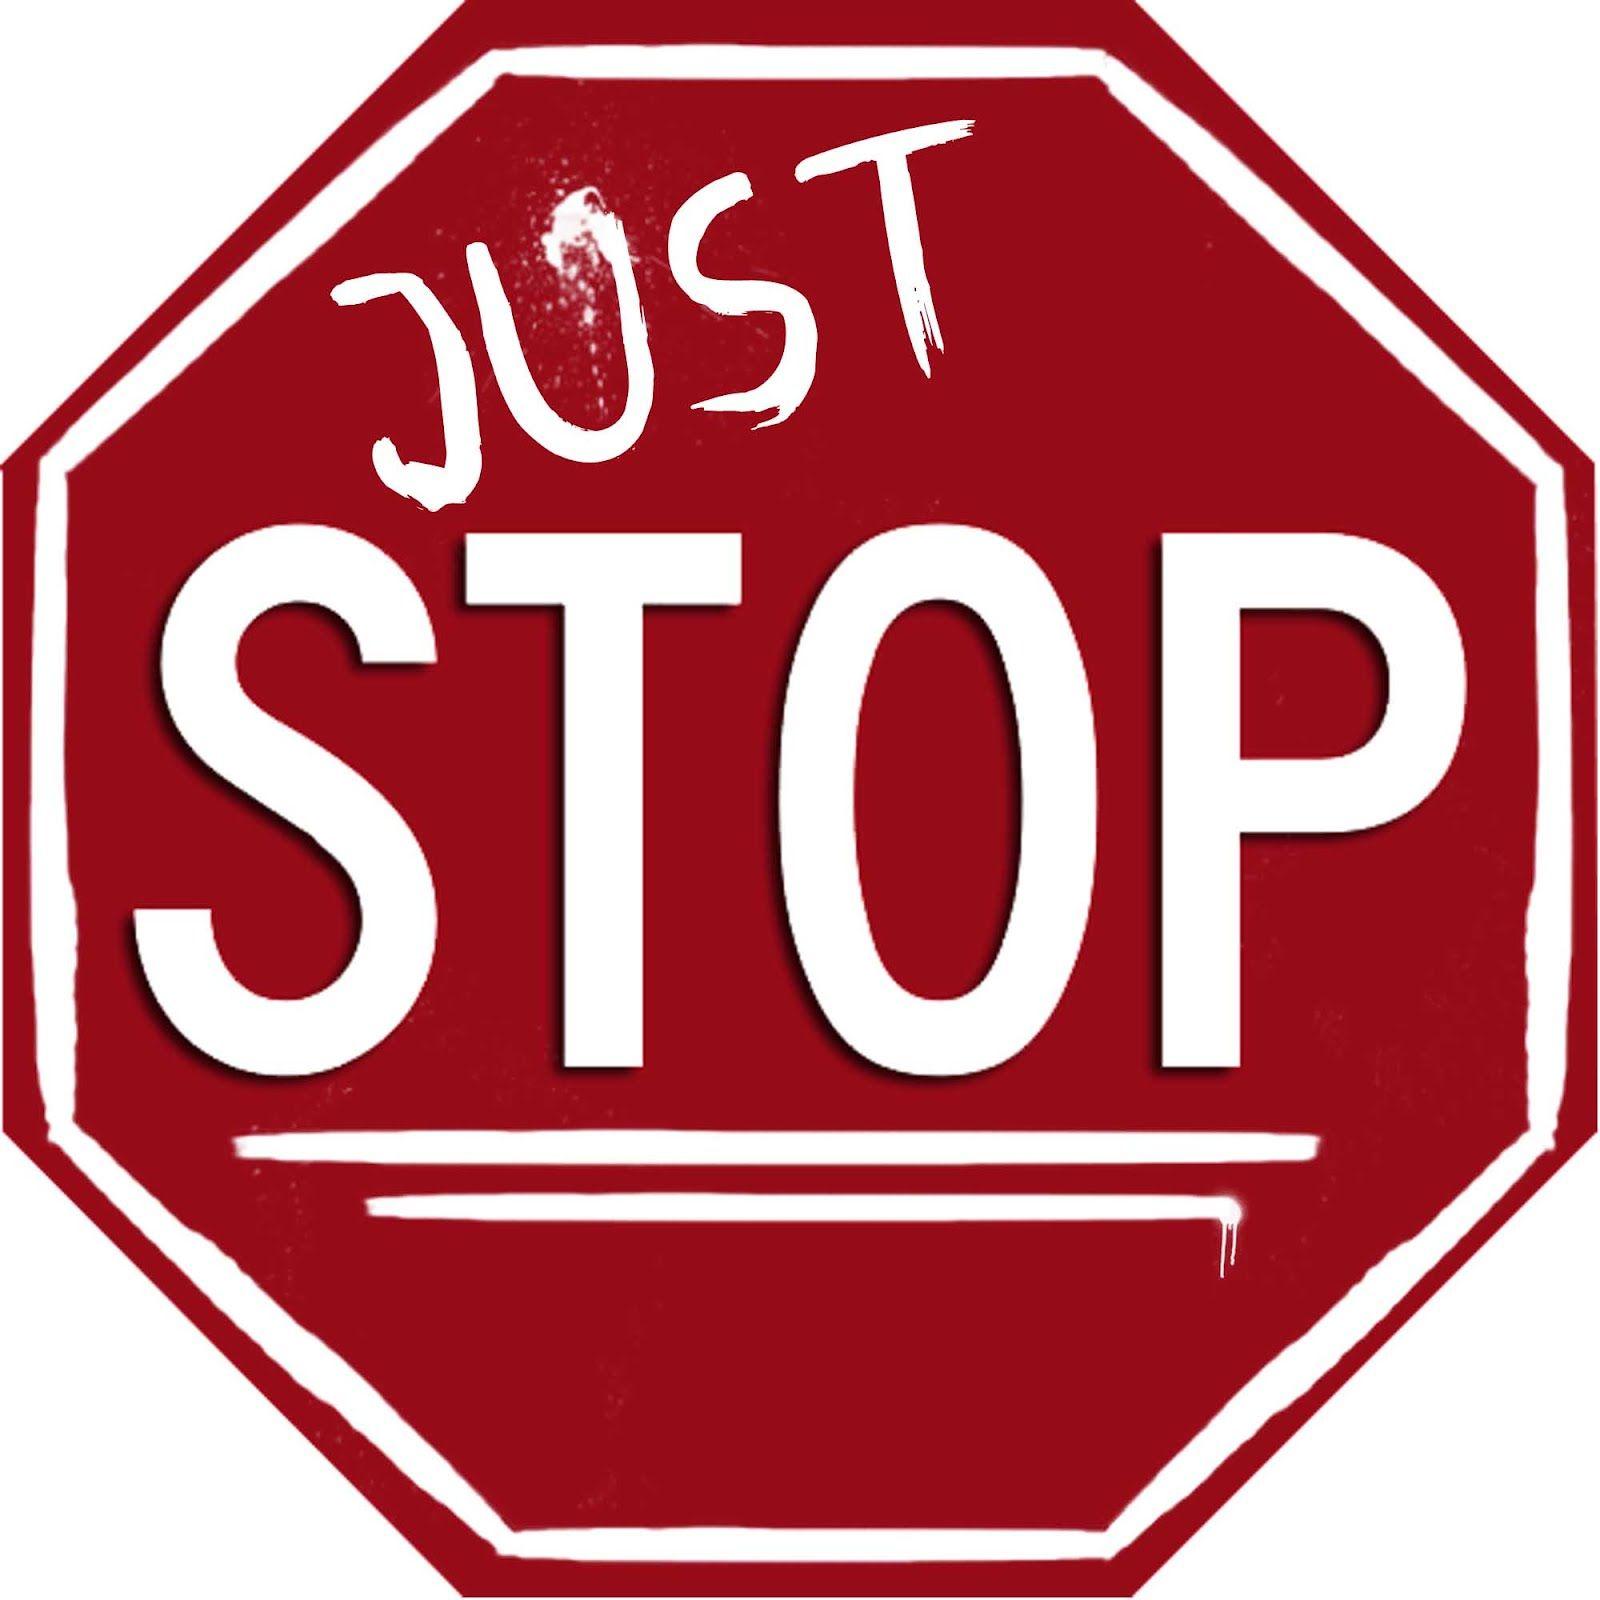 Xtop'logo Logo - Stop Logos